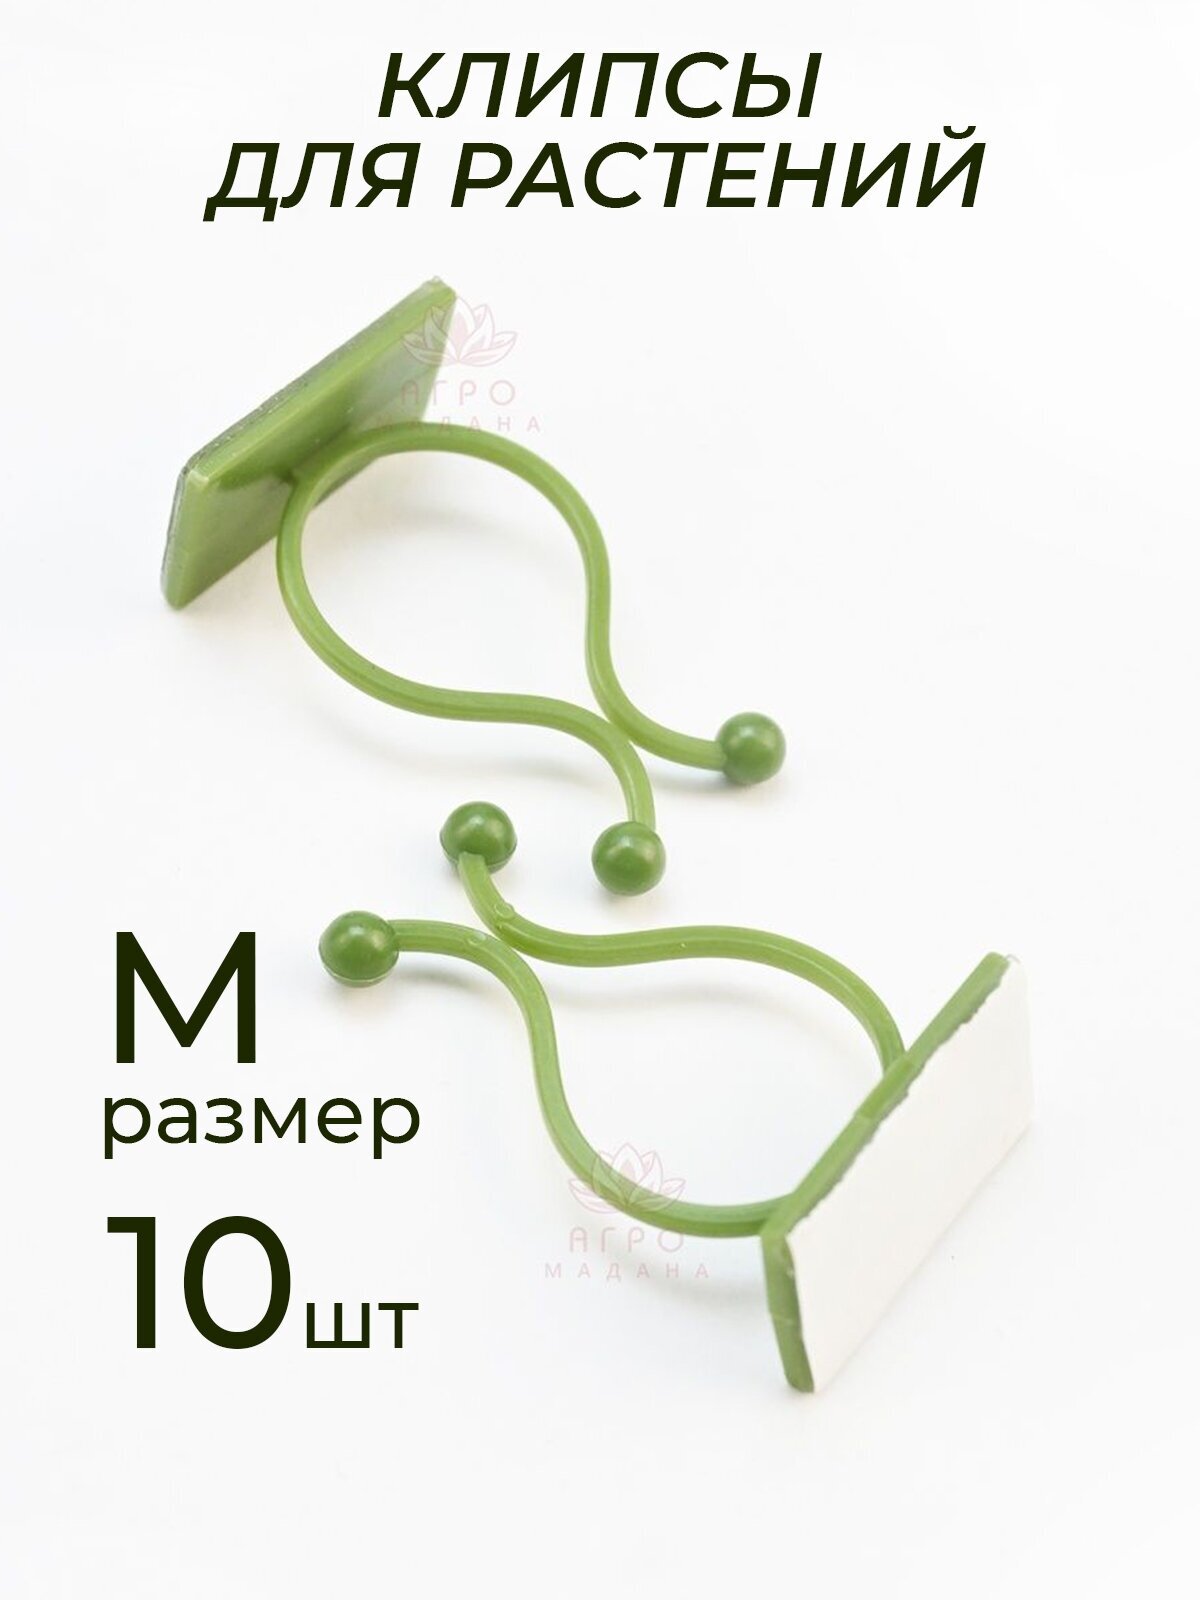 Клипсы для подвязки растений крючки самоклеящиеся для лиан держатель для проводов на липучке зеленый размер M 10шт